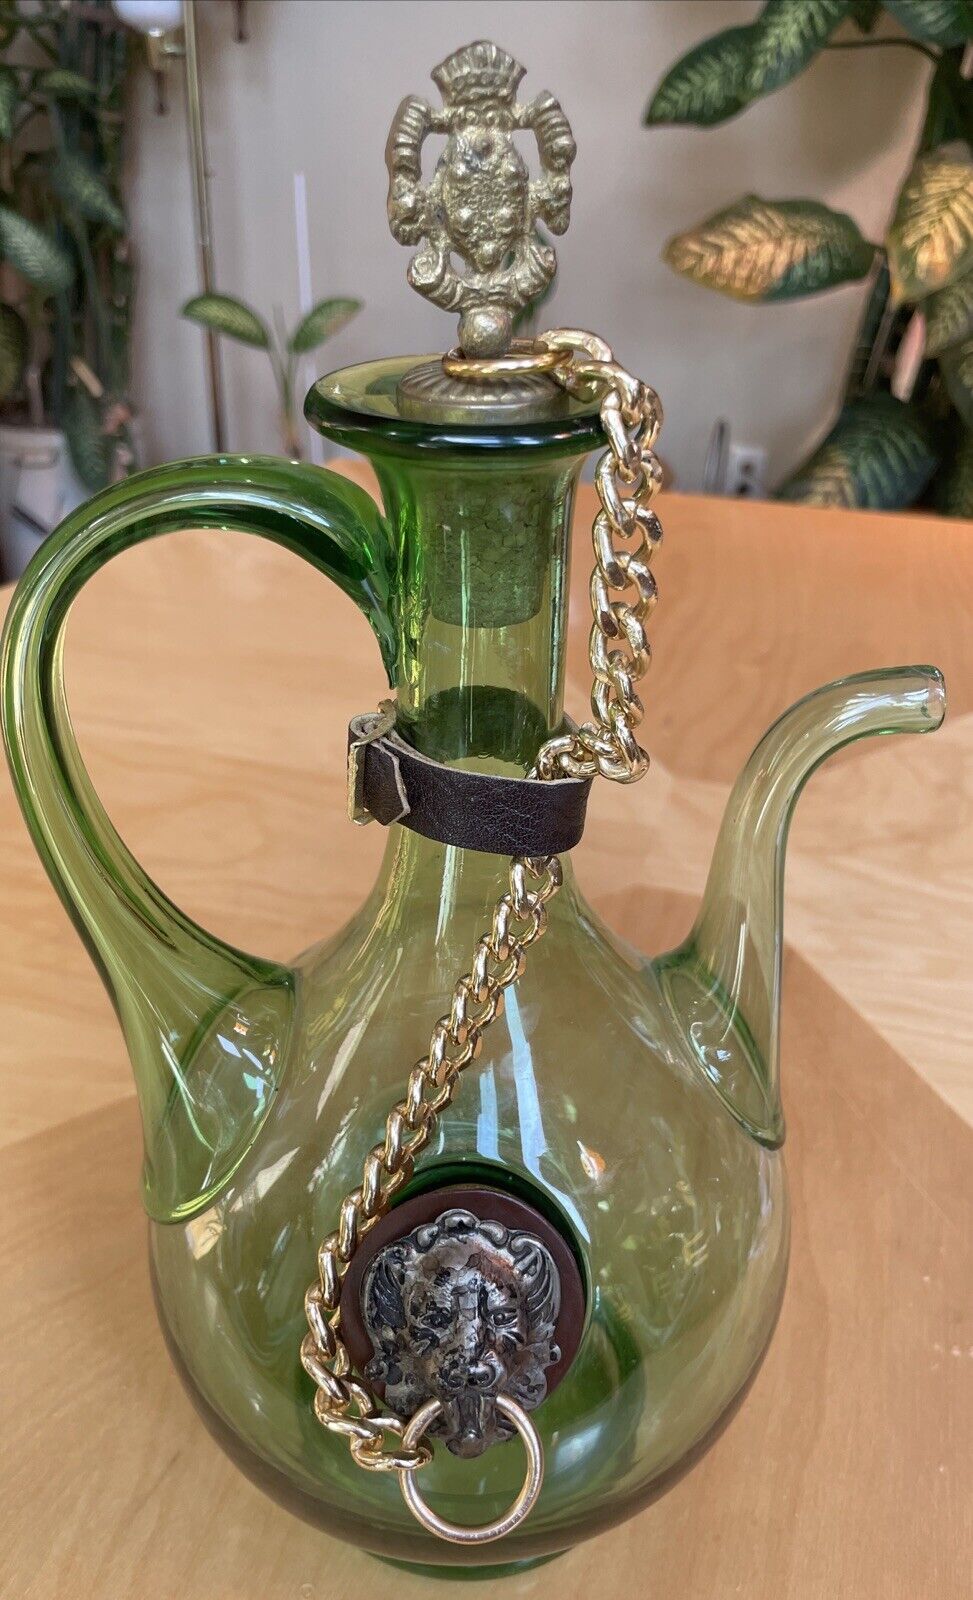 VTG Italian Wine Decanter Green Glass Brass Cork Lion Stopper w Ice Chamber